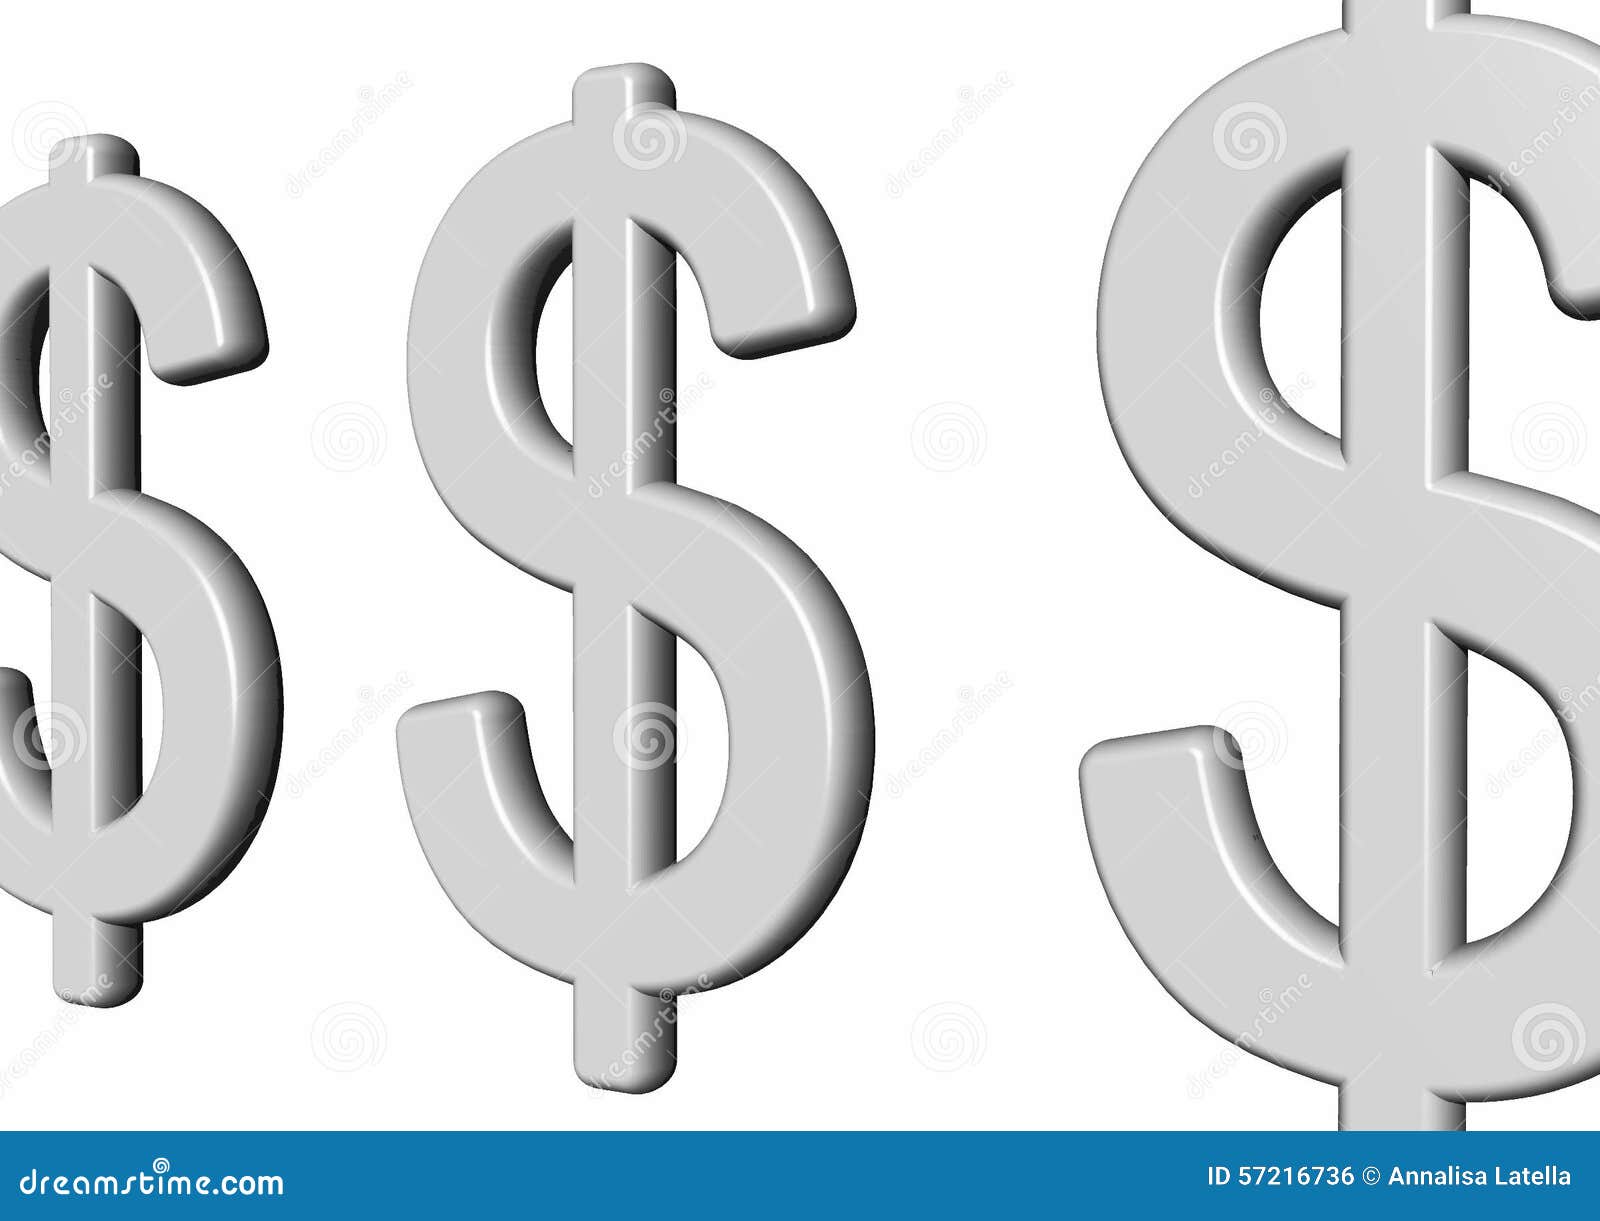 Как рисуется доллар и евро. Символ доллара гкркулесовы столбы. Знак доллара на стене ниша. Значок доллара на приборе рубеж.